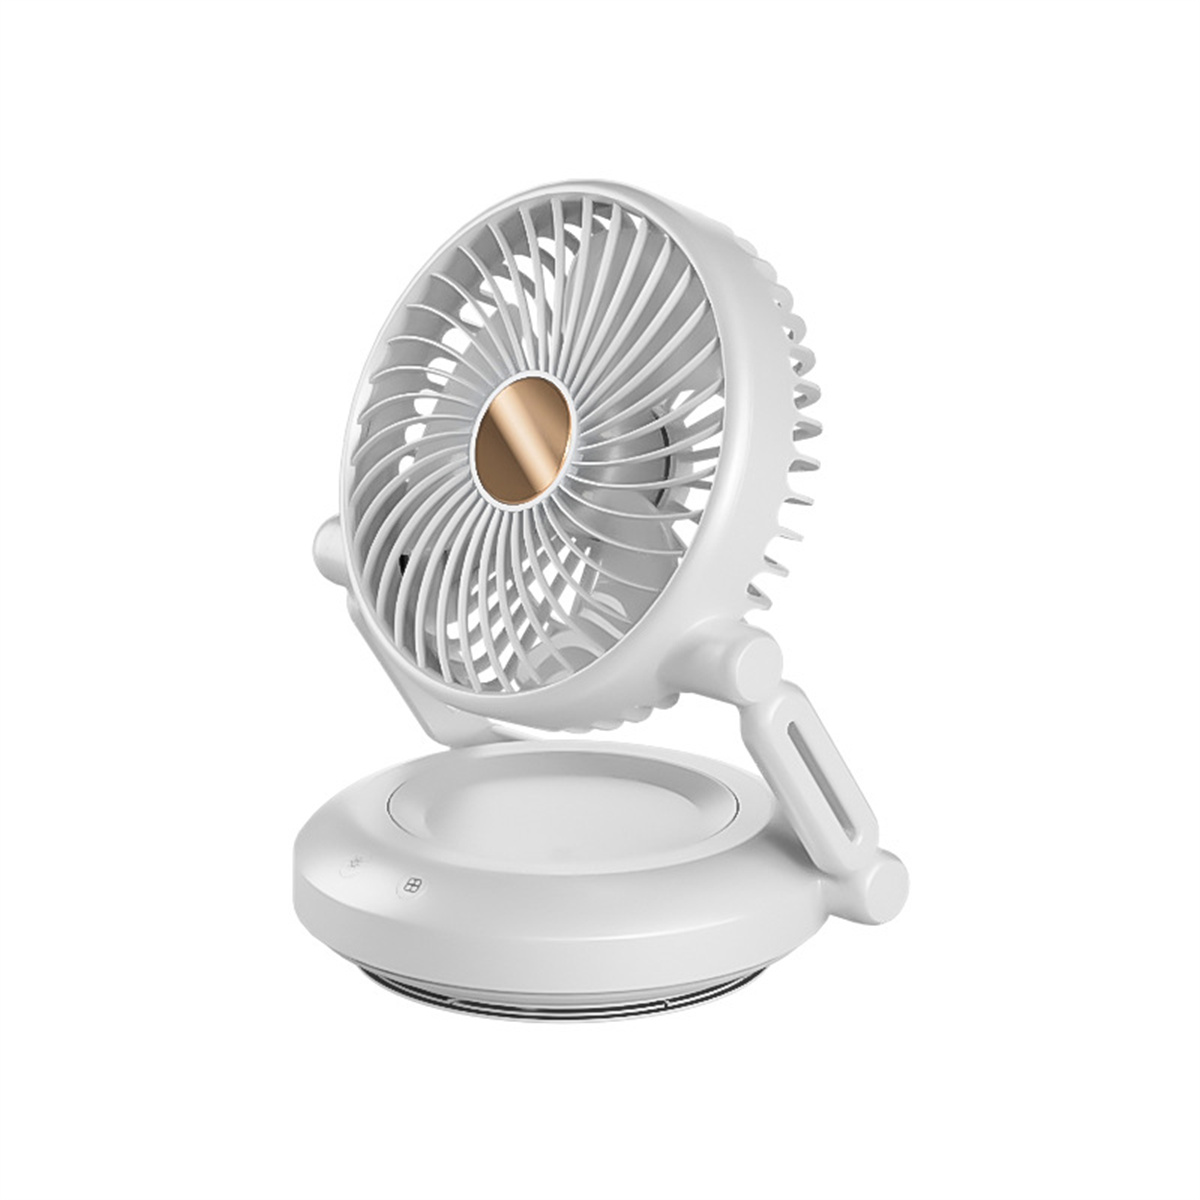 Klein Weiß SYNTEK Ventilator Tischlampe Elektrischer Ventilator Lüftungslüfter faltbar Wiederaufladbar weiß